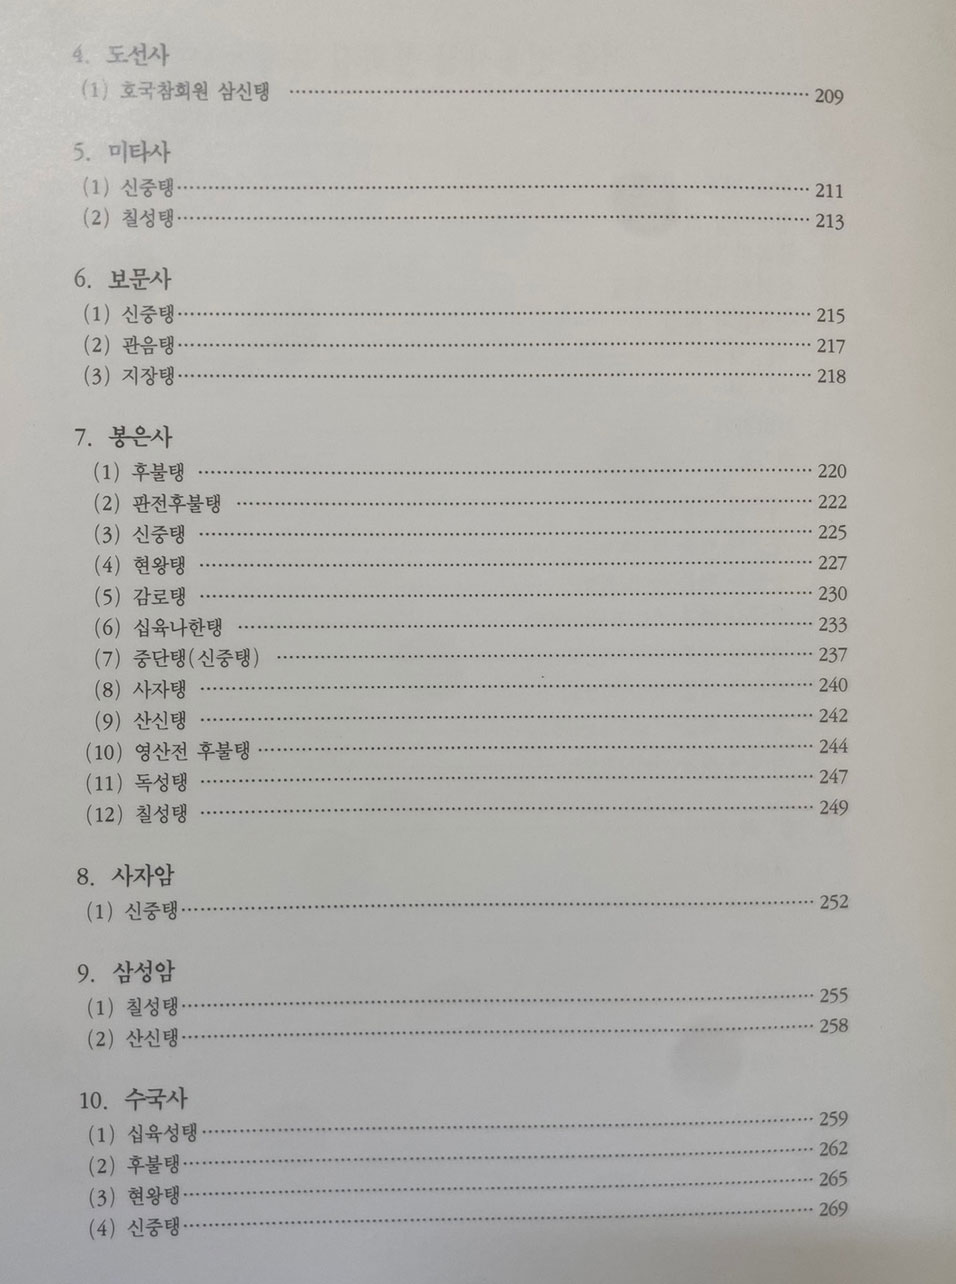 서울전통사찰불화 / 1996년 초판 / 큰책 / 서울특별시